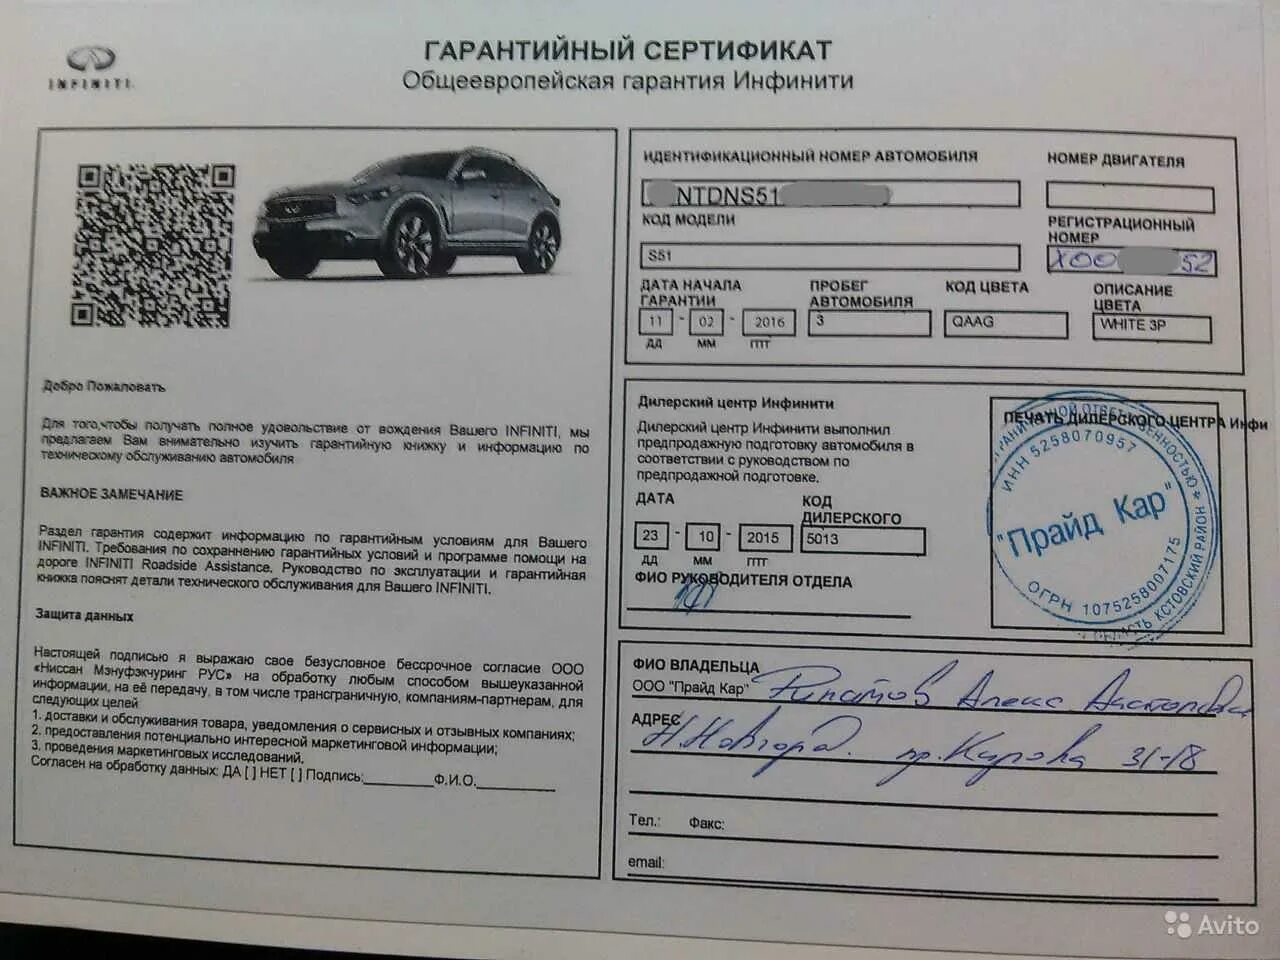 Обслуживание автомобилей документы. Сертификат гарантийный авто.